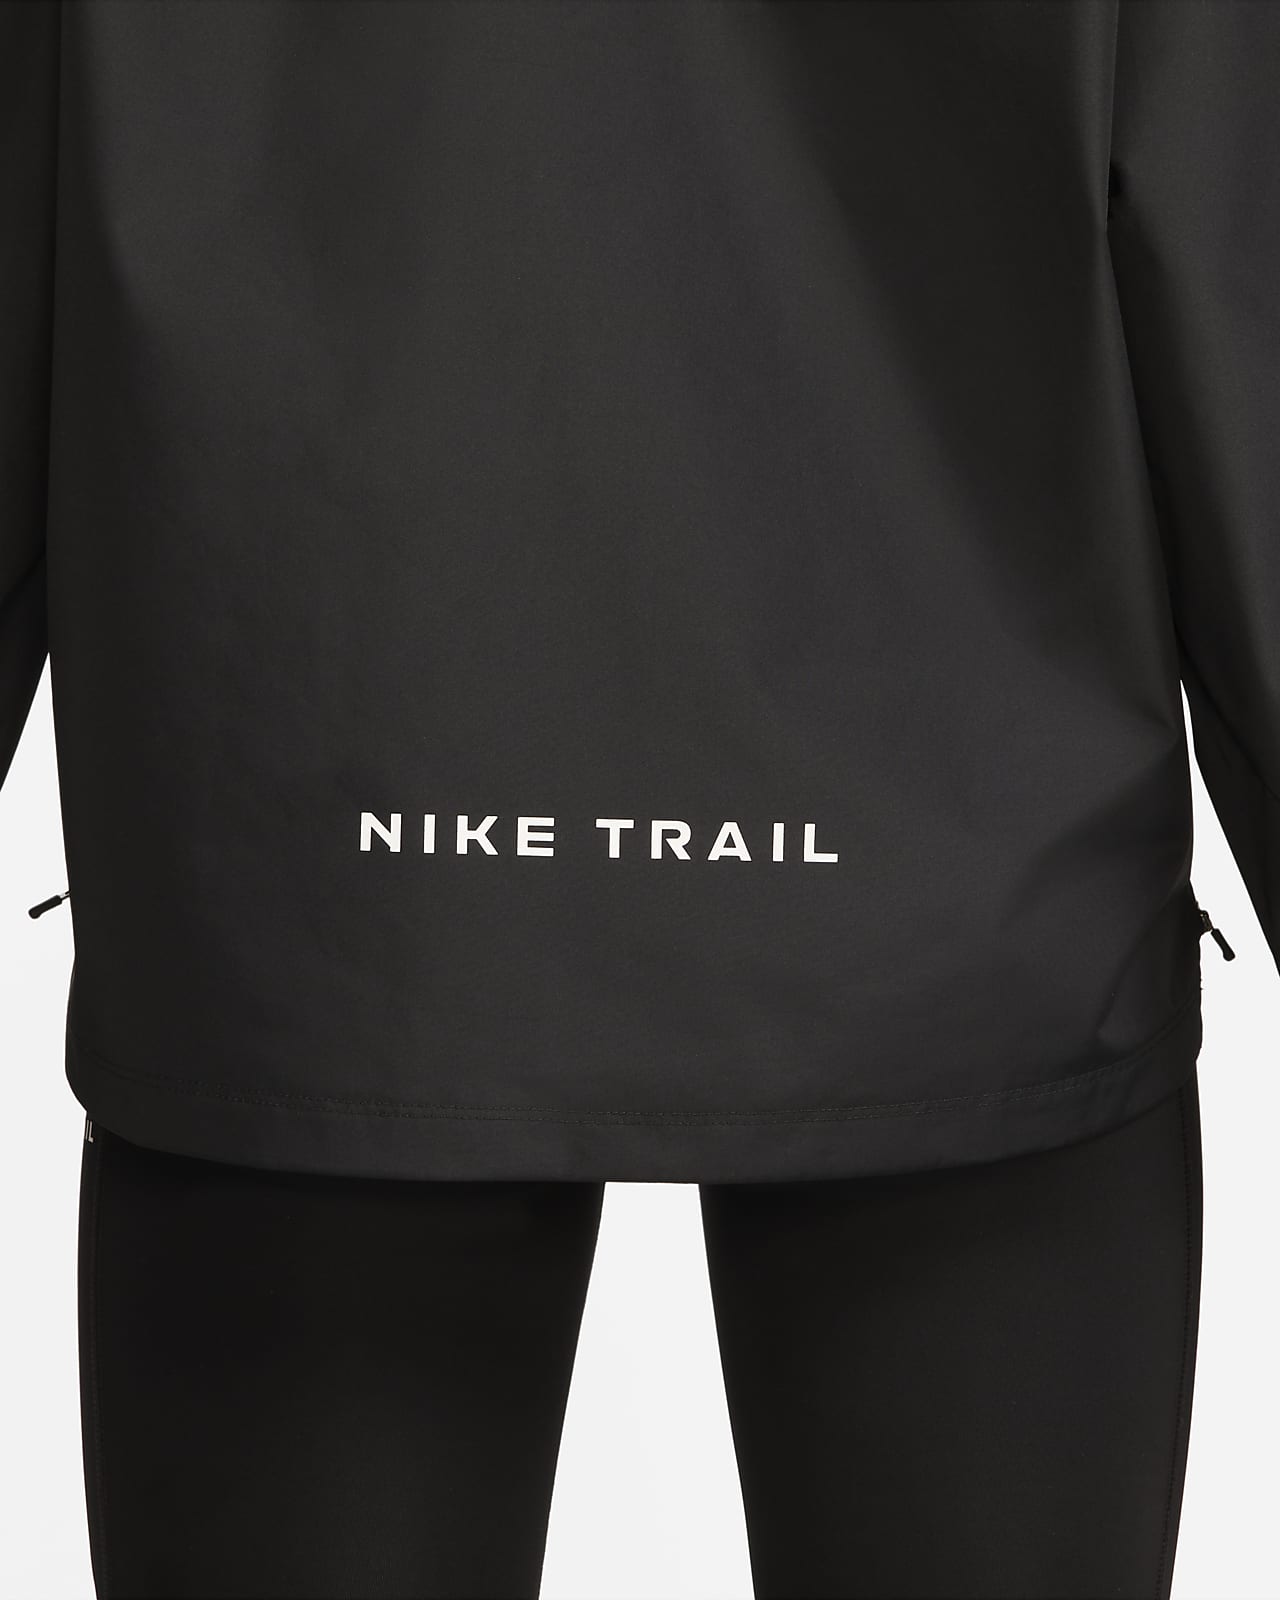 Nike GORE-TEX INFINIUM ™ Women's Trail Running Jacket. Nike AE